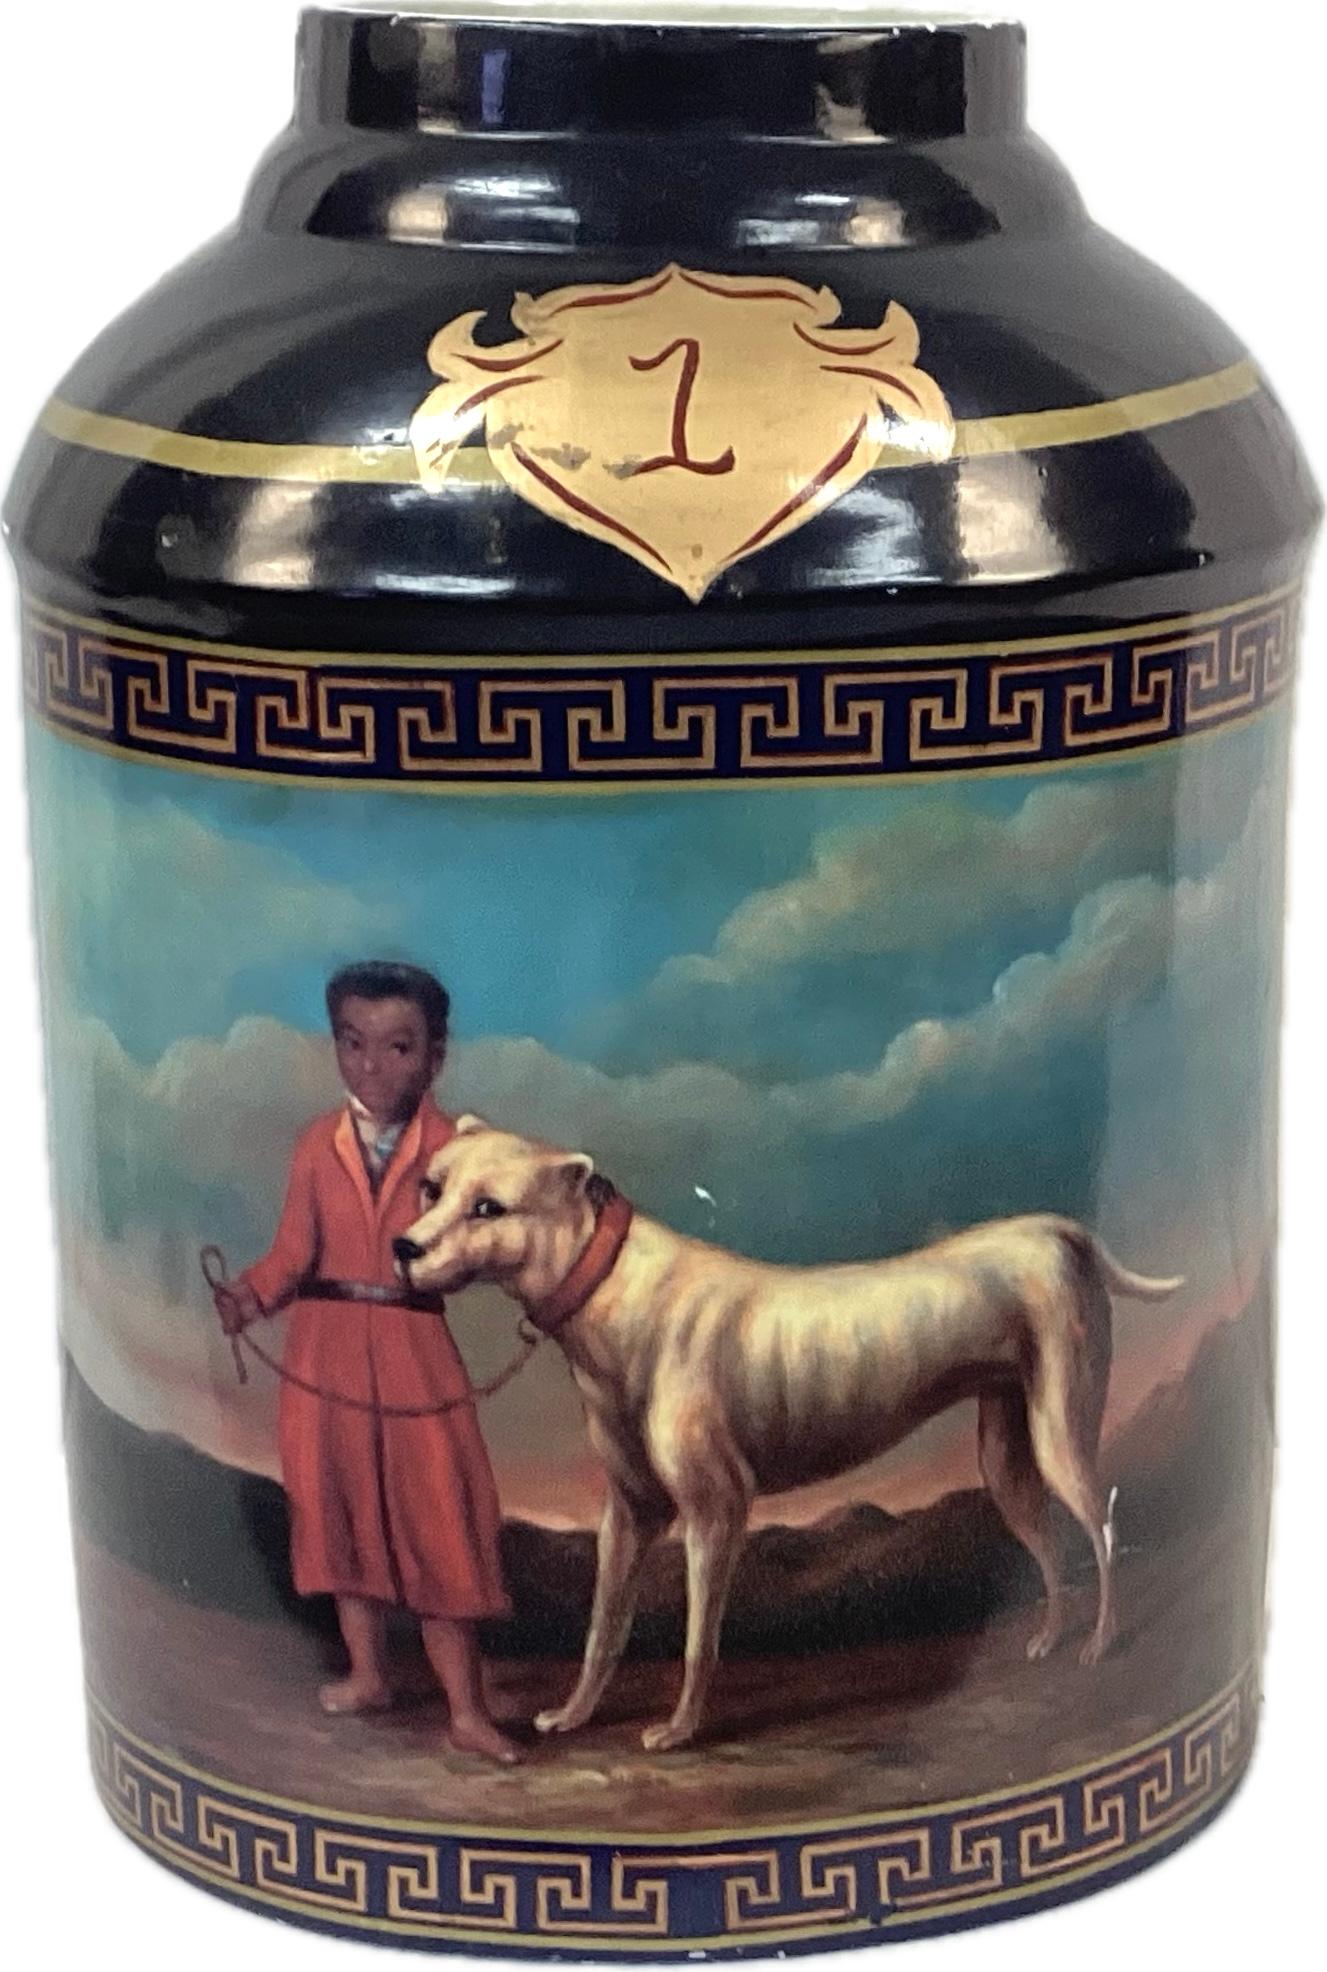 Jarre à thé en porcelaine d'exportation chinoise peinte à la main. Des images d'un garçon et de son chien ornent les deux côtés du pot dans des couleurs riches de bleu foncé, d'or, de rouge et de turquoise. Une bordure en forme de clé grecque